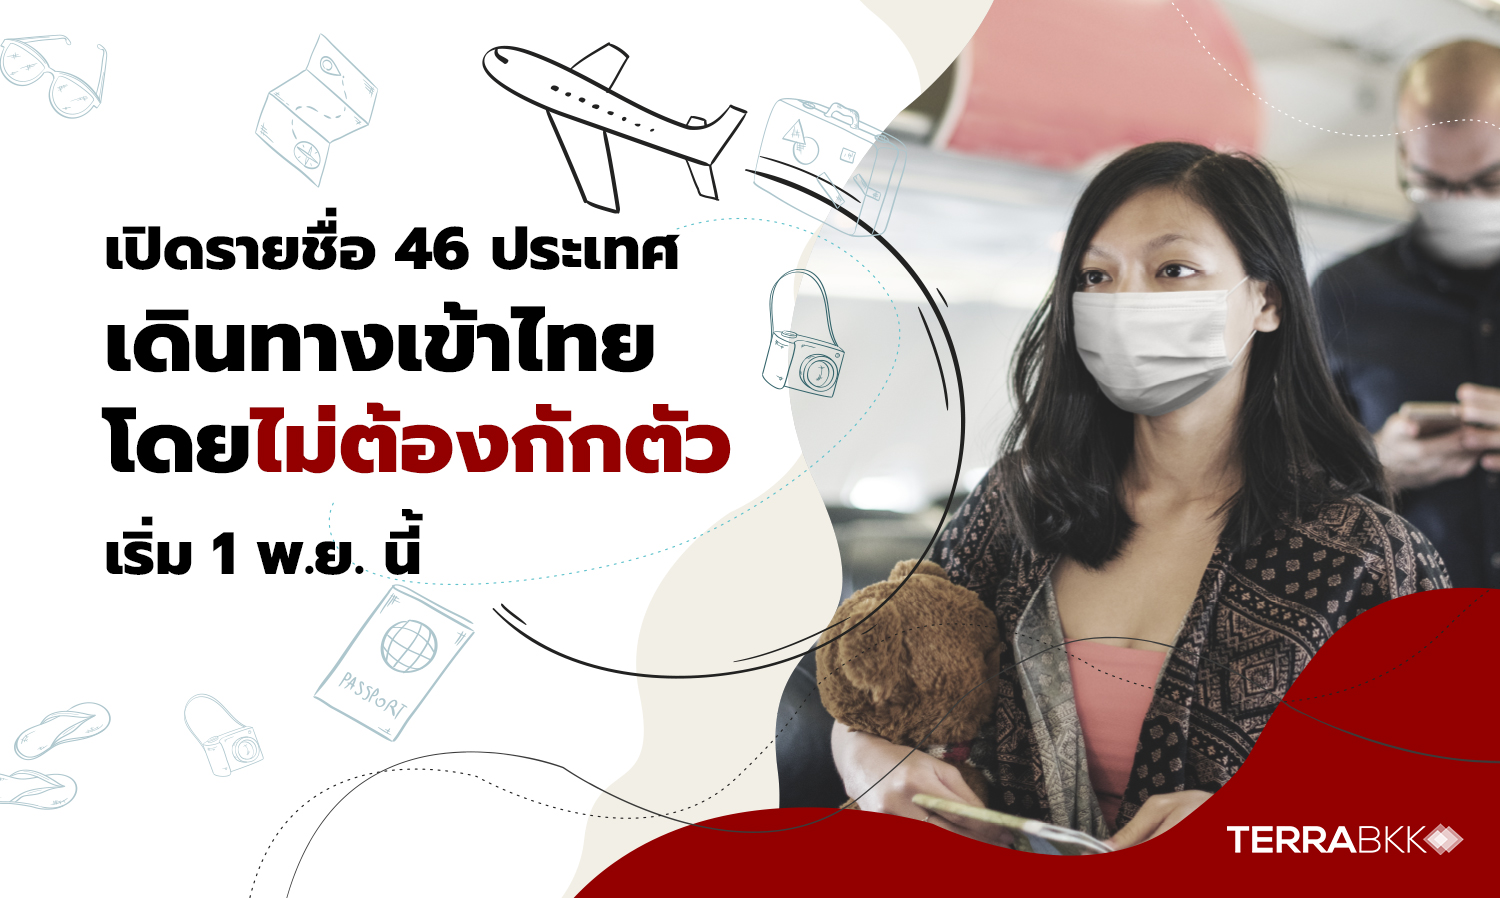 เปิดรายชื่อ 46 ประเทศ เดินทางเข้าไทยโดยไม่ต้องกักตัว เริ่ม 1 พ.ย. นี้